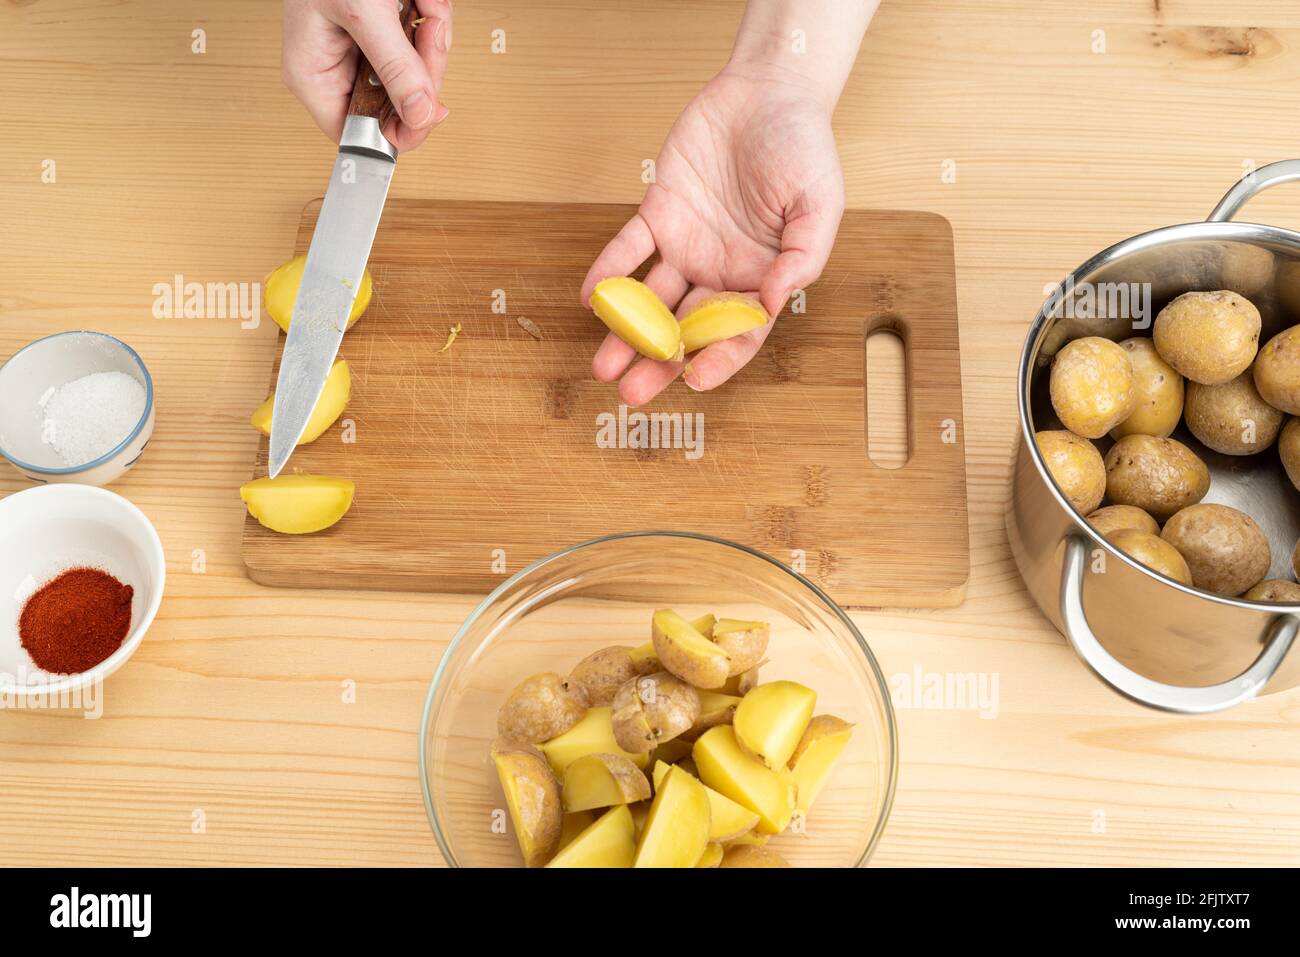 Couper les pommes de terre bouillies sur la paume d'une jeune femme. Une option pour cuisiner des pommes de terre de l'Idaho. Banque D'Images